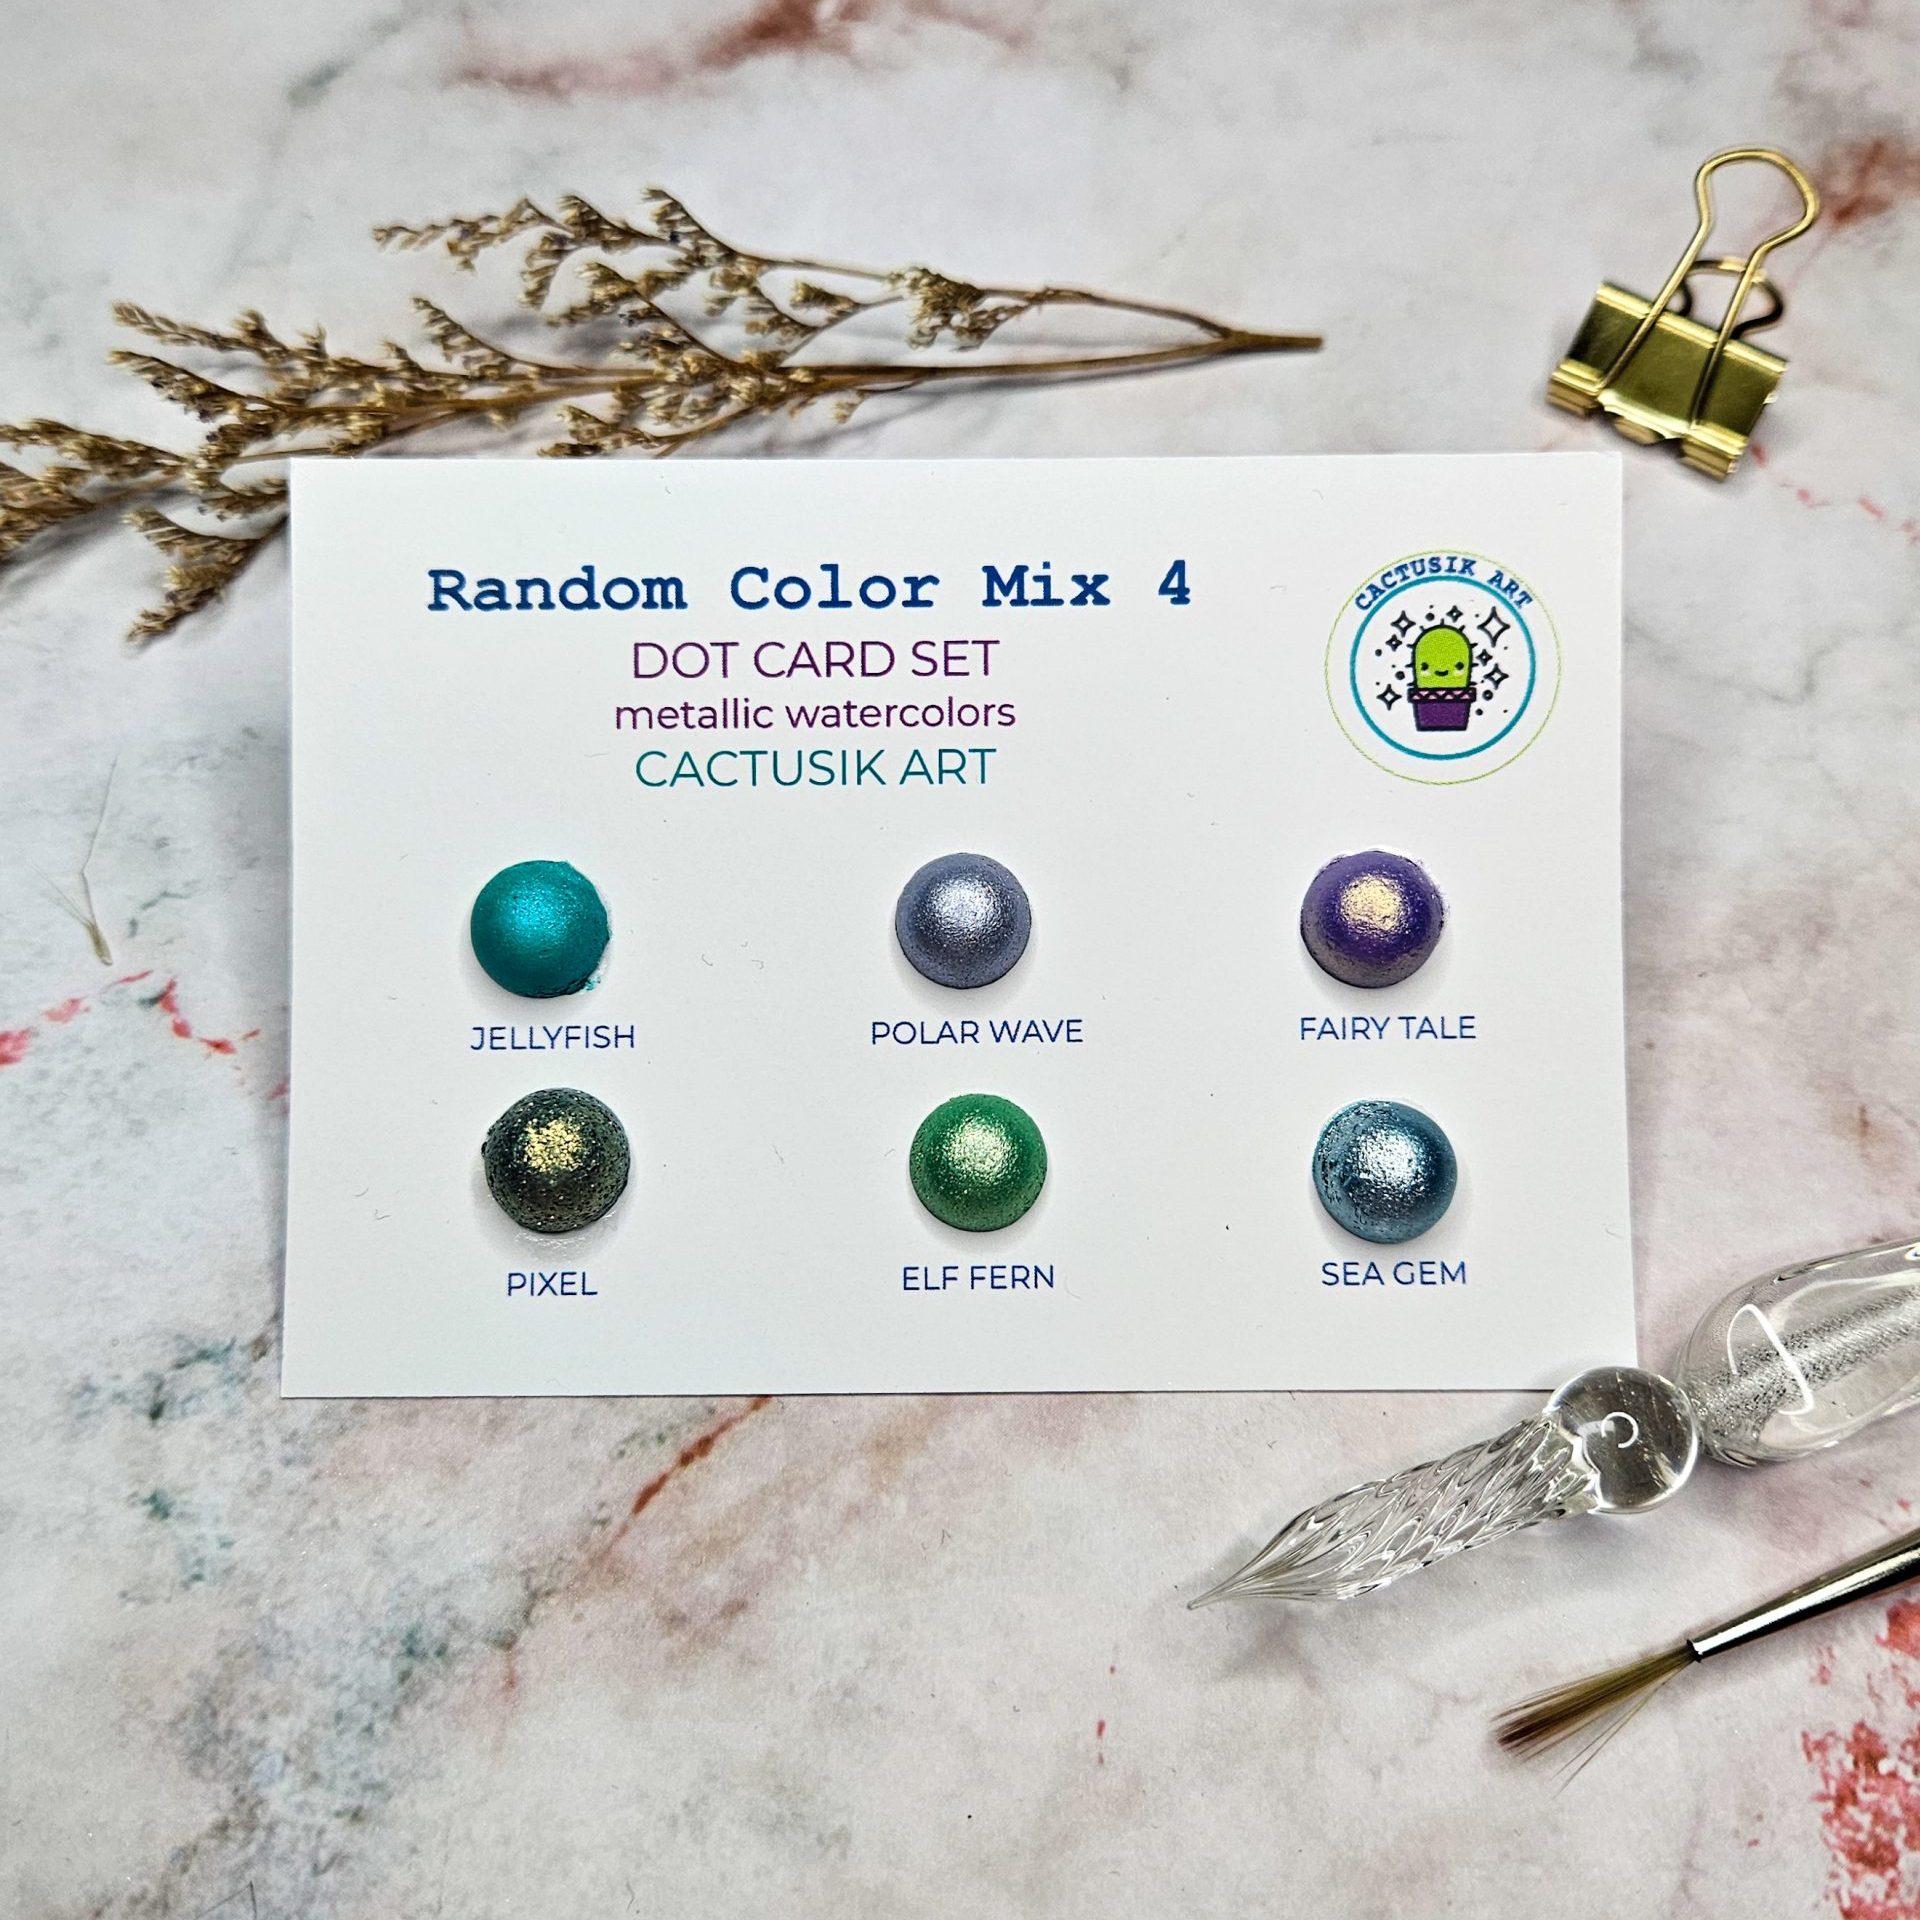 Random Color Mix 4 – Dot Card Set